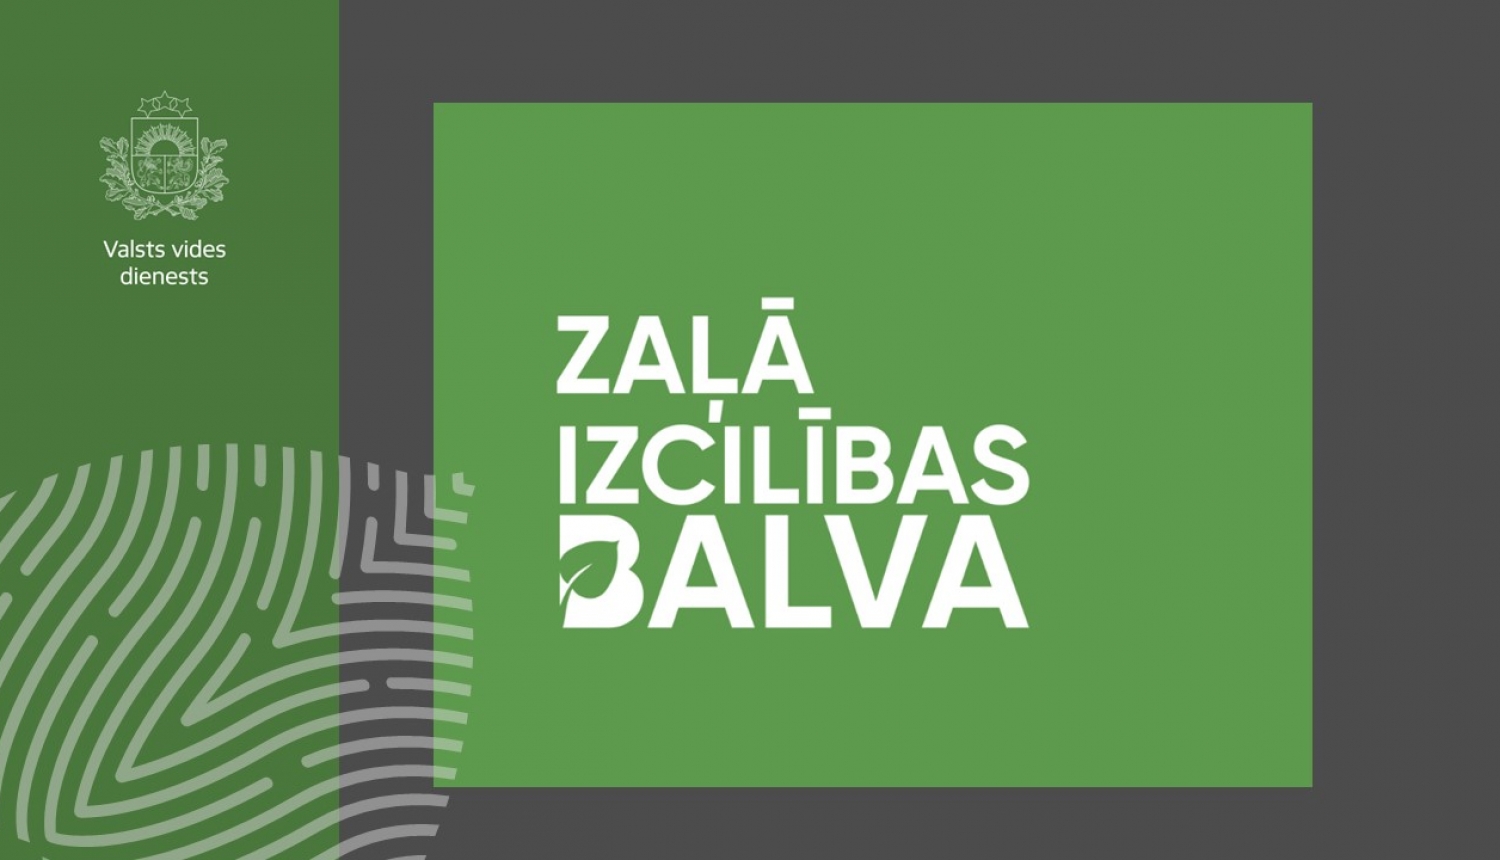 Logo Zaļā izcilība